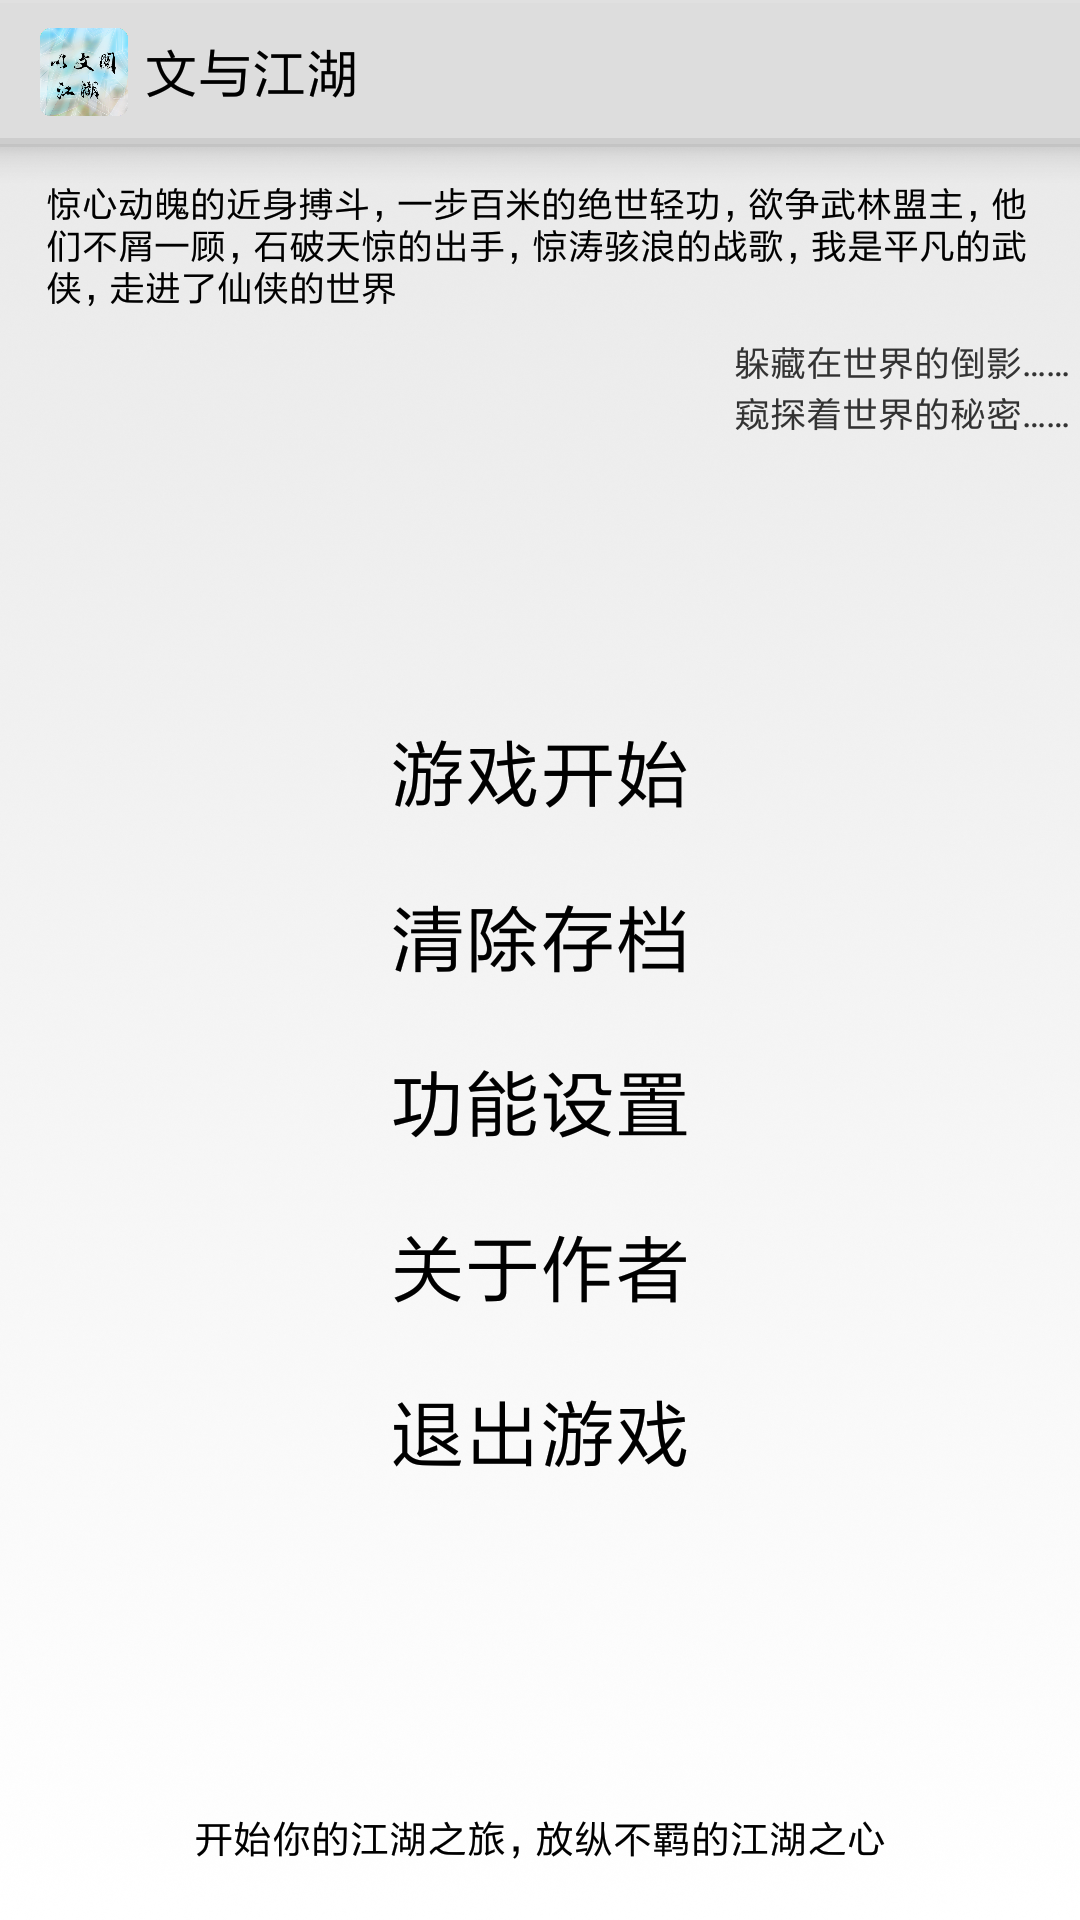 Screenshot 1 of Wen at Jianghu 6.7